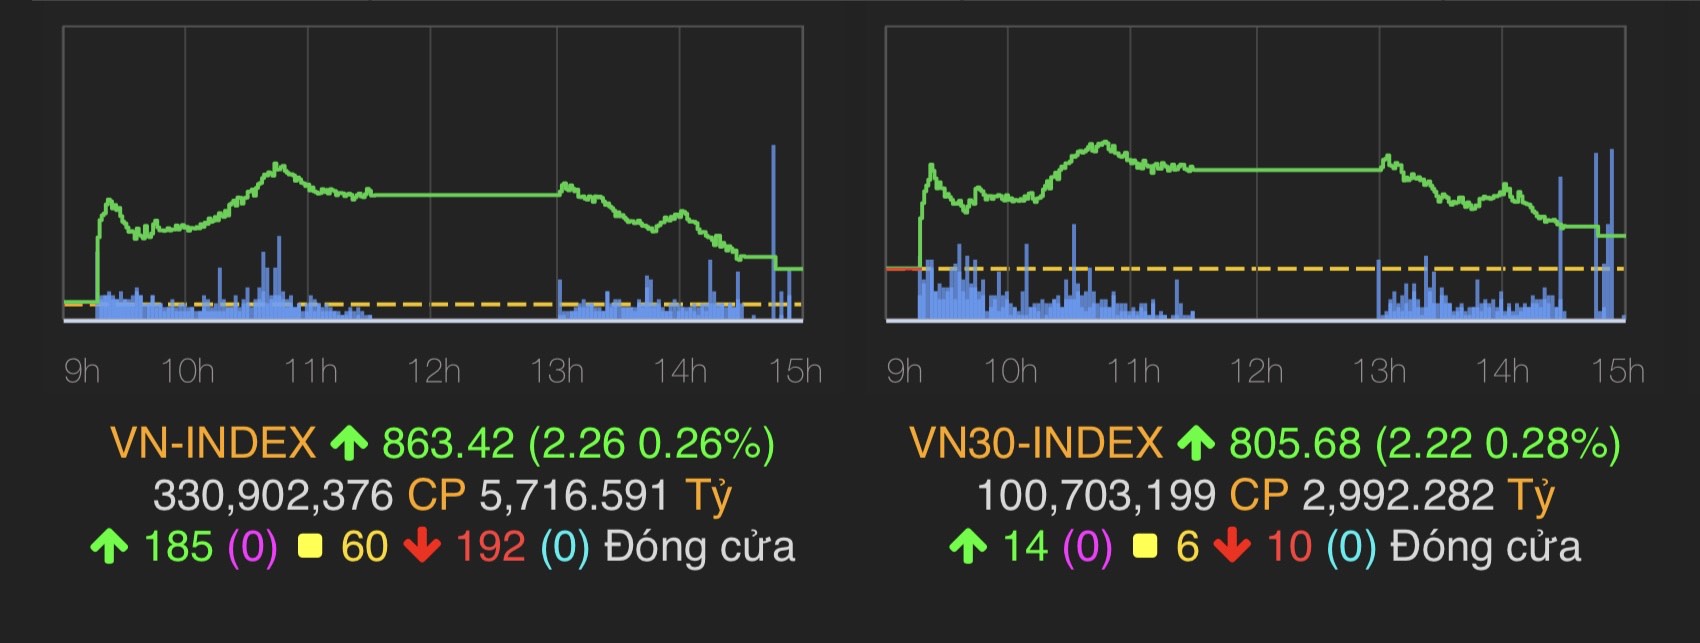 VN-Index tăng 2,26 điểm lên mốc 863,42 điểm.